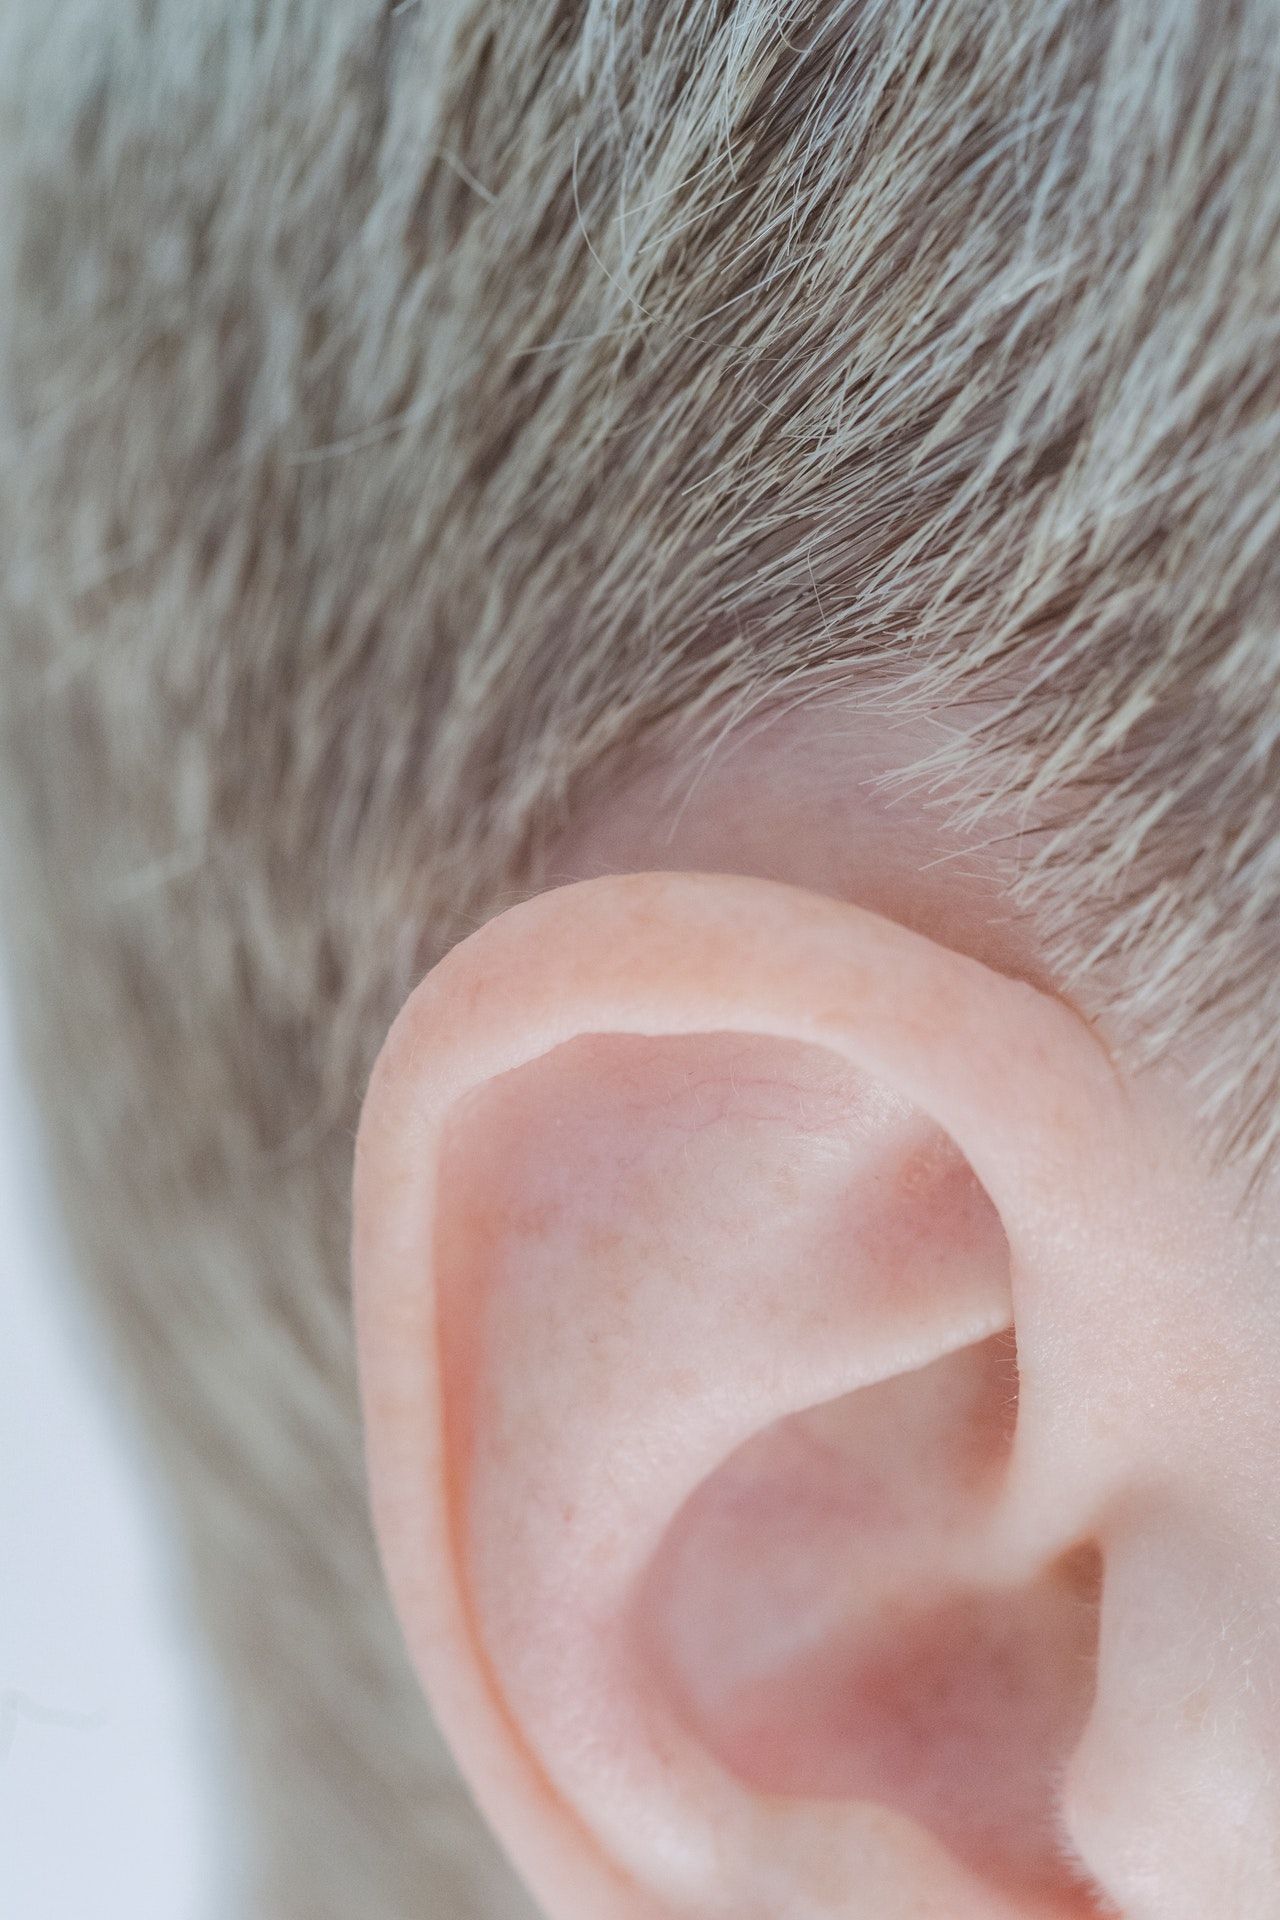 Mengapa kita mempunyai dua telinga